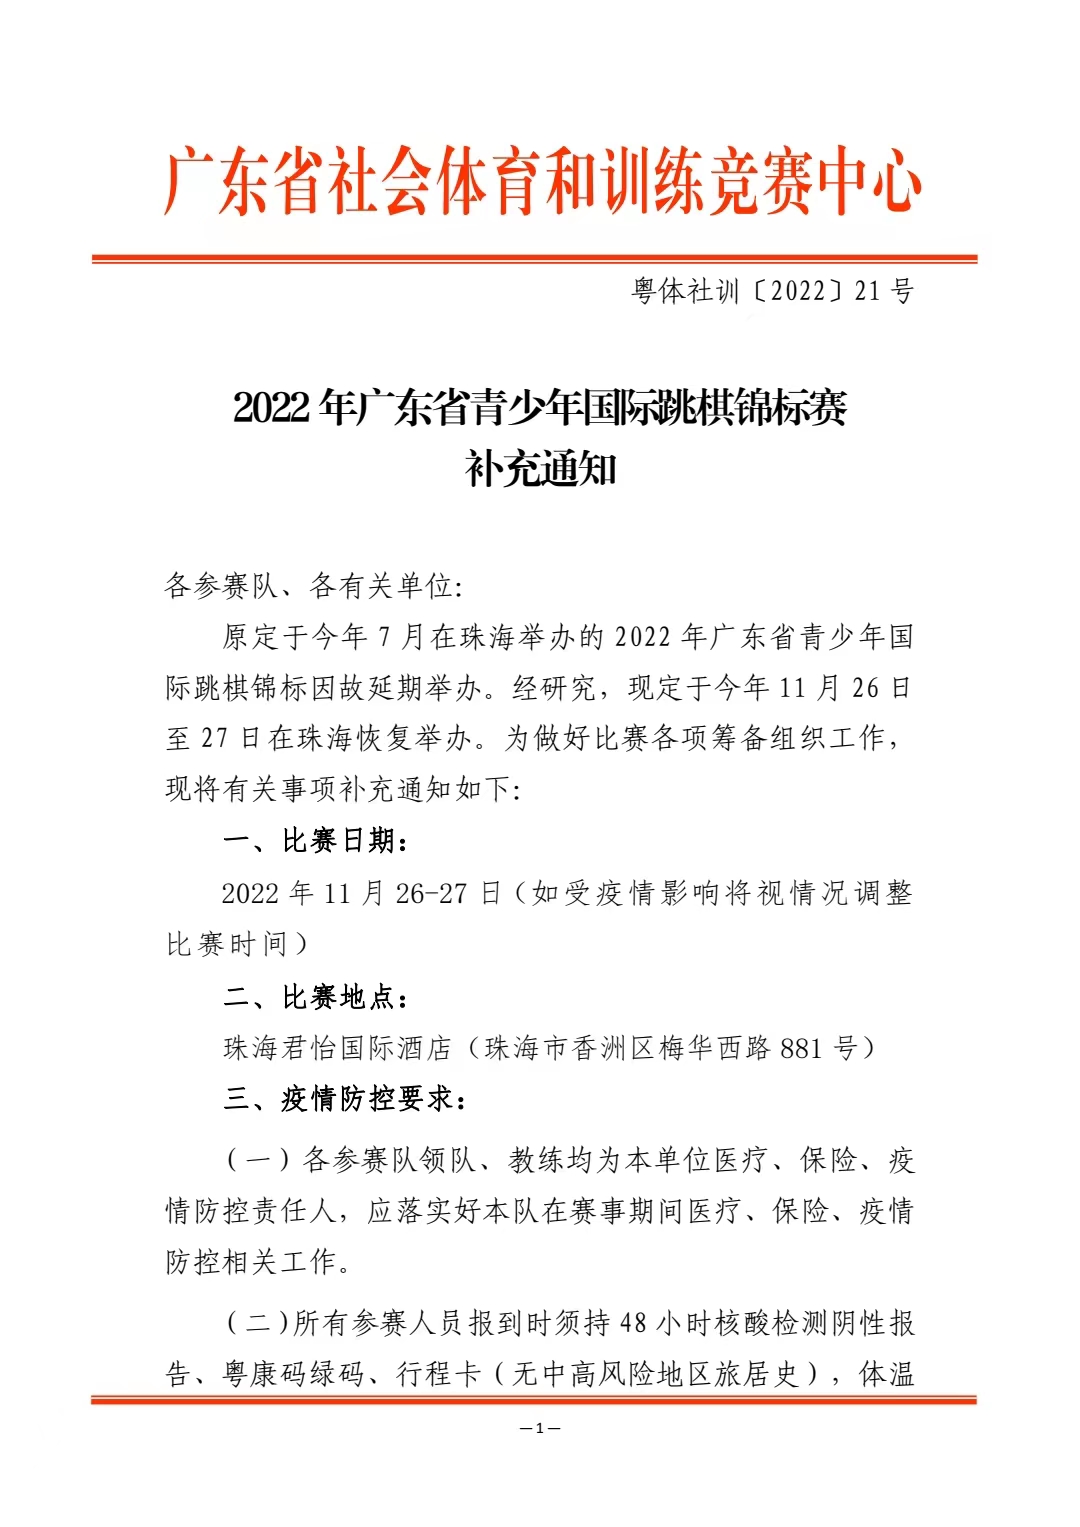 2022 年广东省青少年国际跳棋锦标赛补充通知